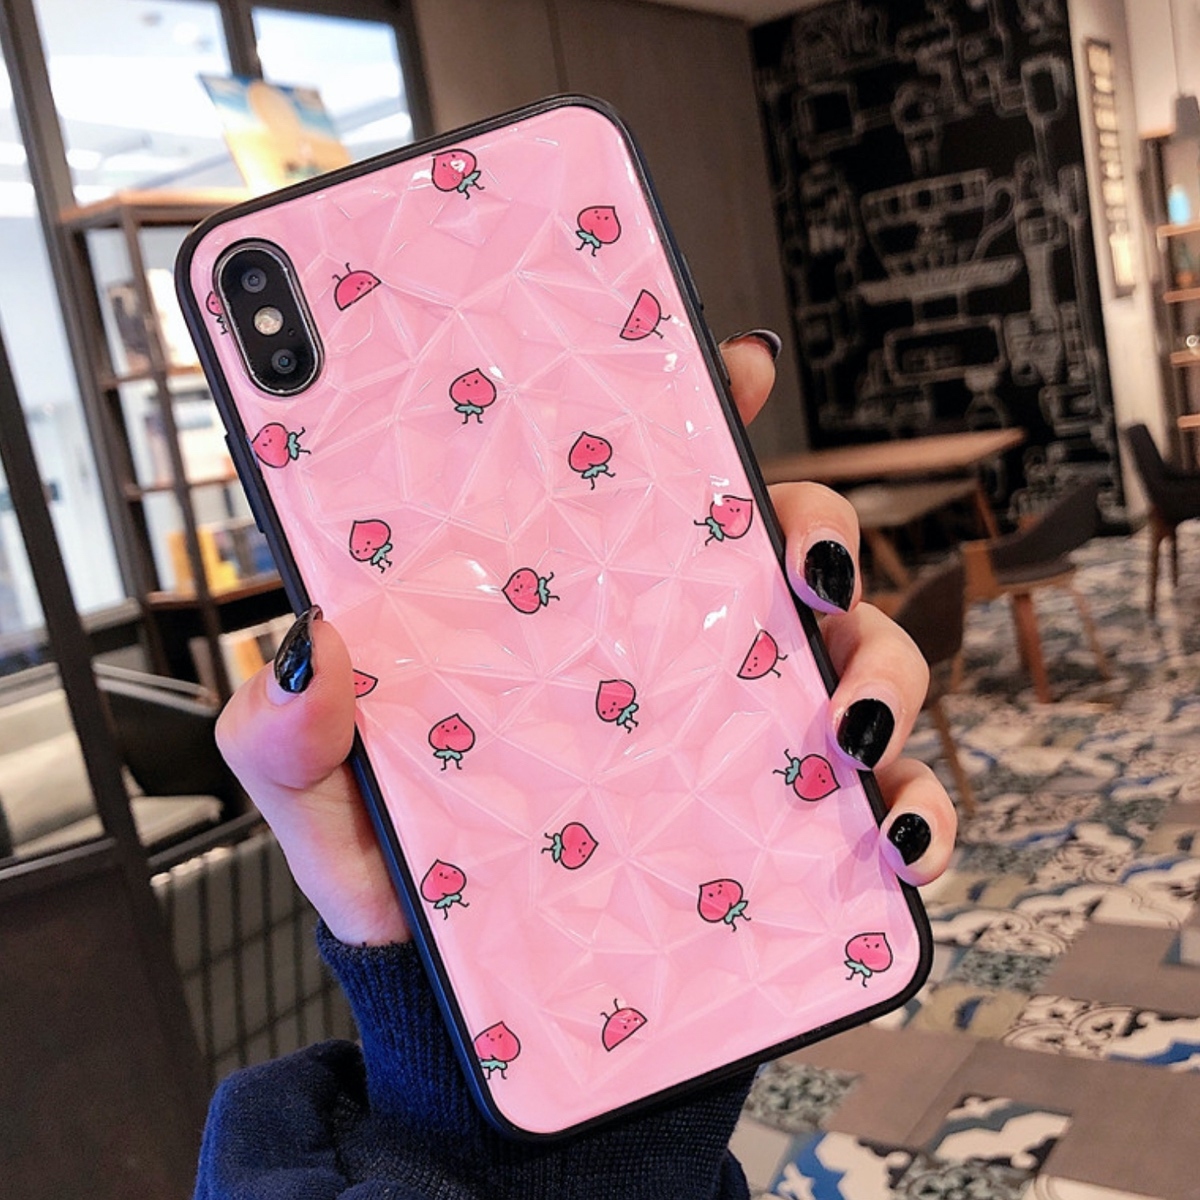 Iphone ケース 韓国 ガラス風 桃 ピーチ ピンク かわいい シンプル 個性的 面白い おもしろ ケース 可愛い お洒落 Iphone7 8 Iphonex Xs Iphonexr スマホケース 携帯ケース セレクトショップオンリーユー